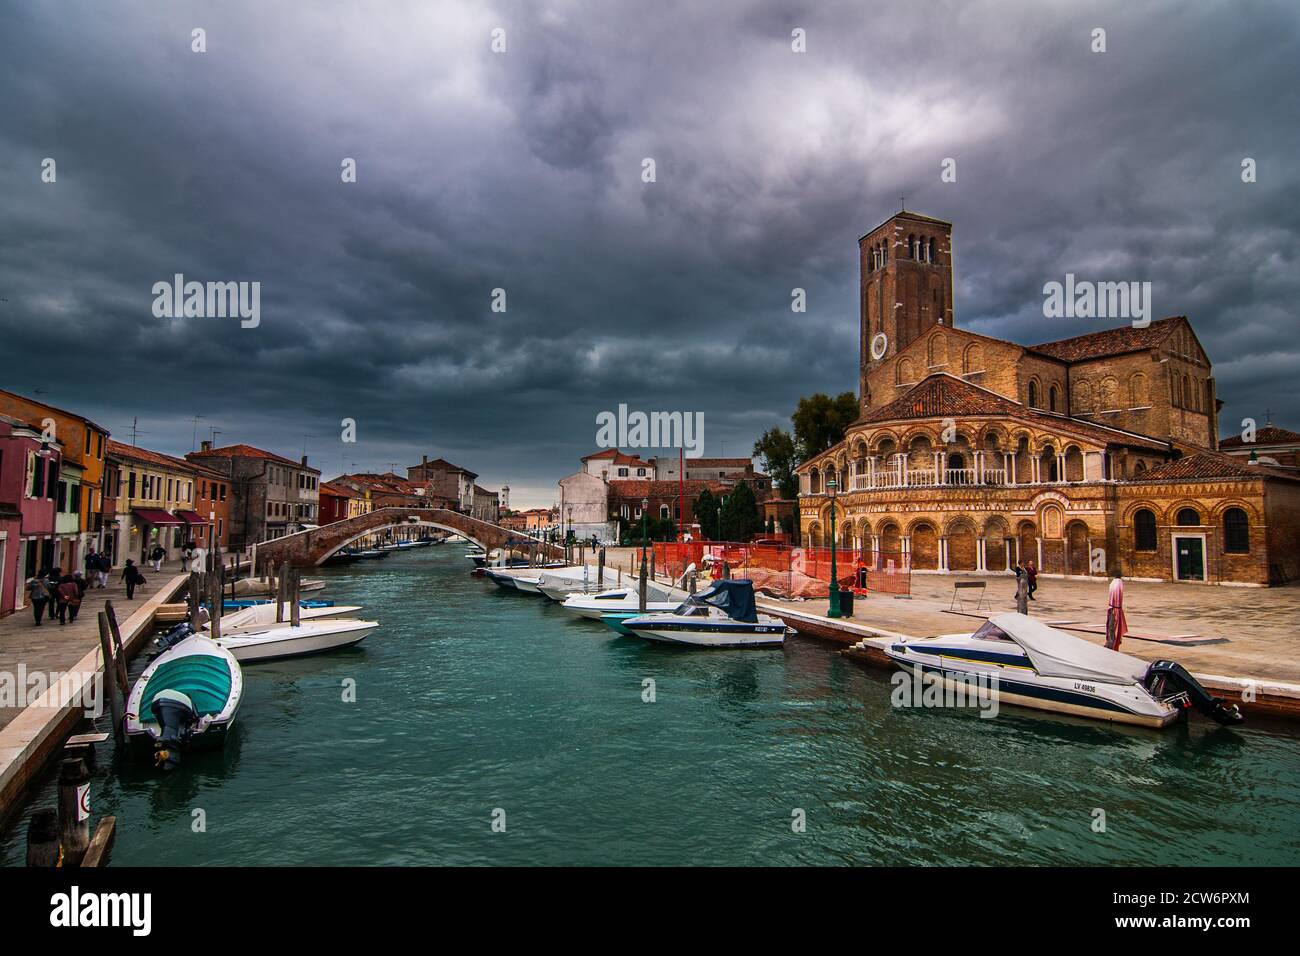 La tempête approche à Murano, où se dresse l'église principale. Banque D'Images